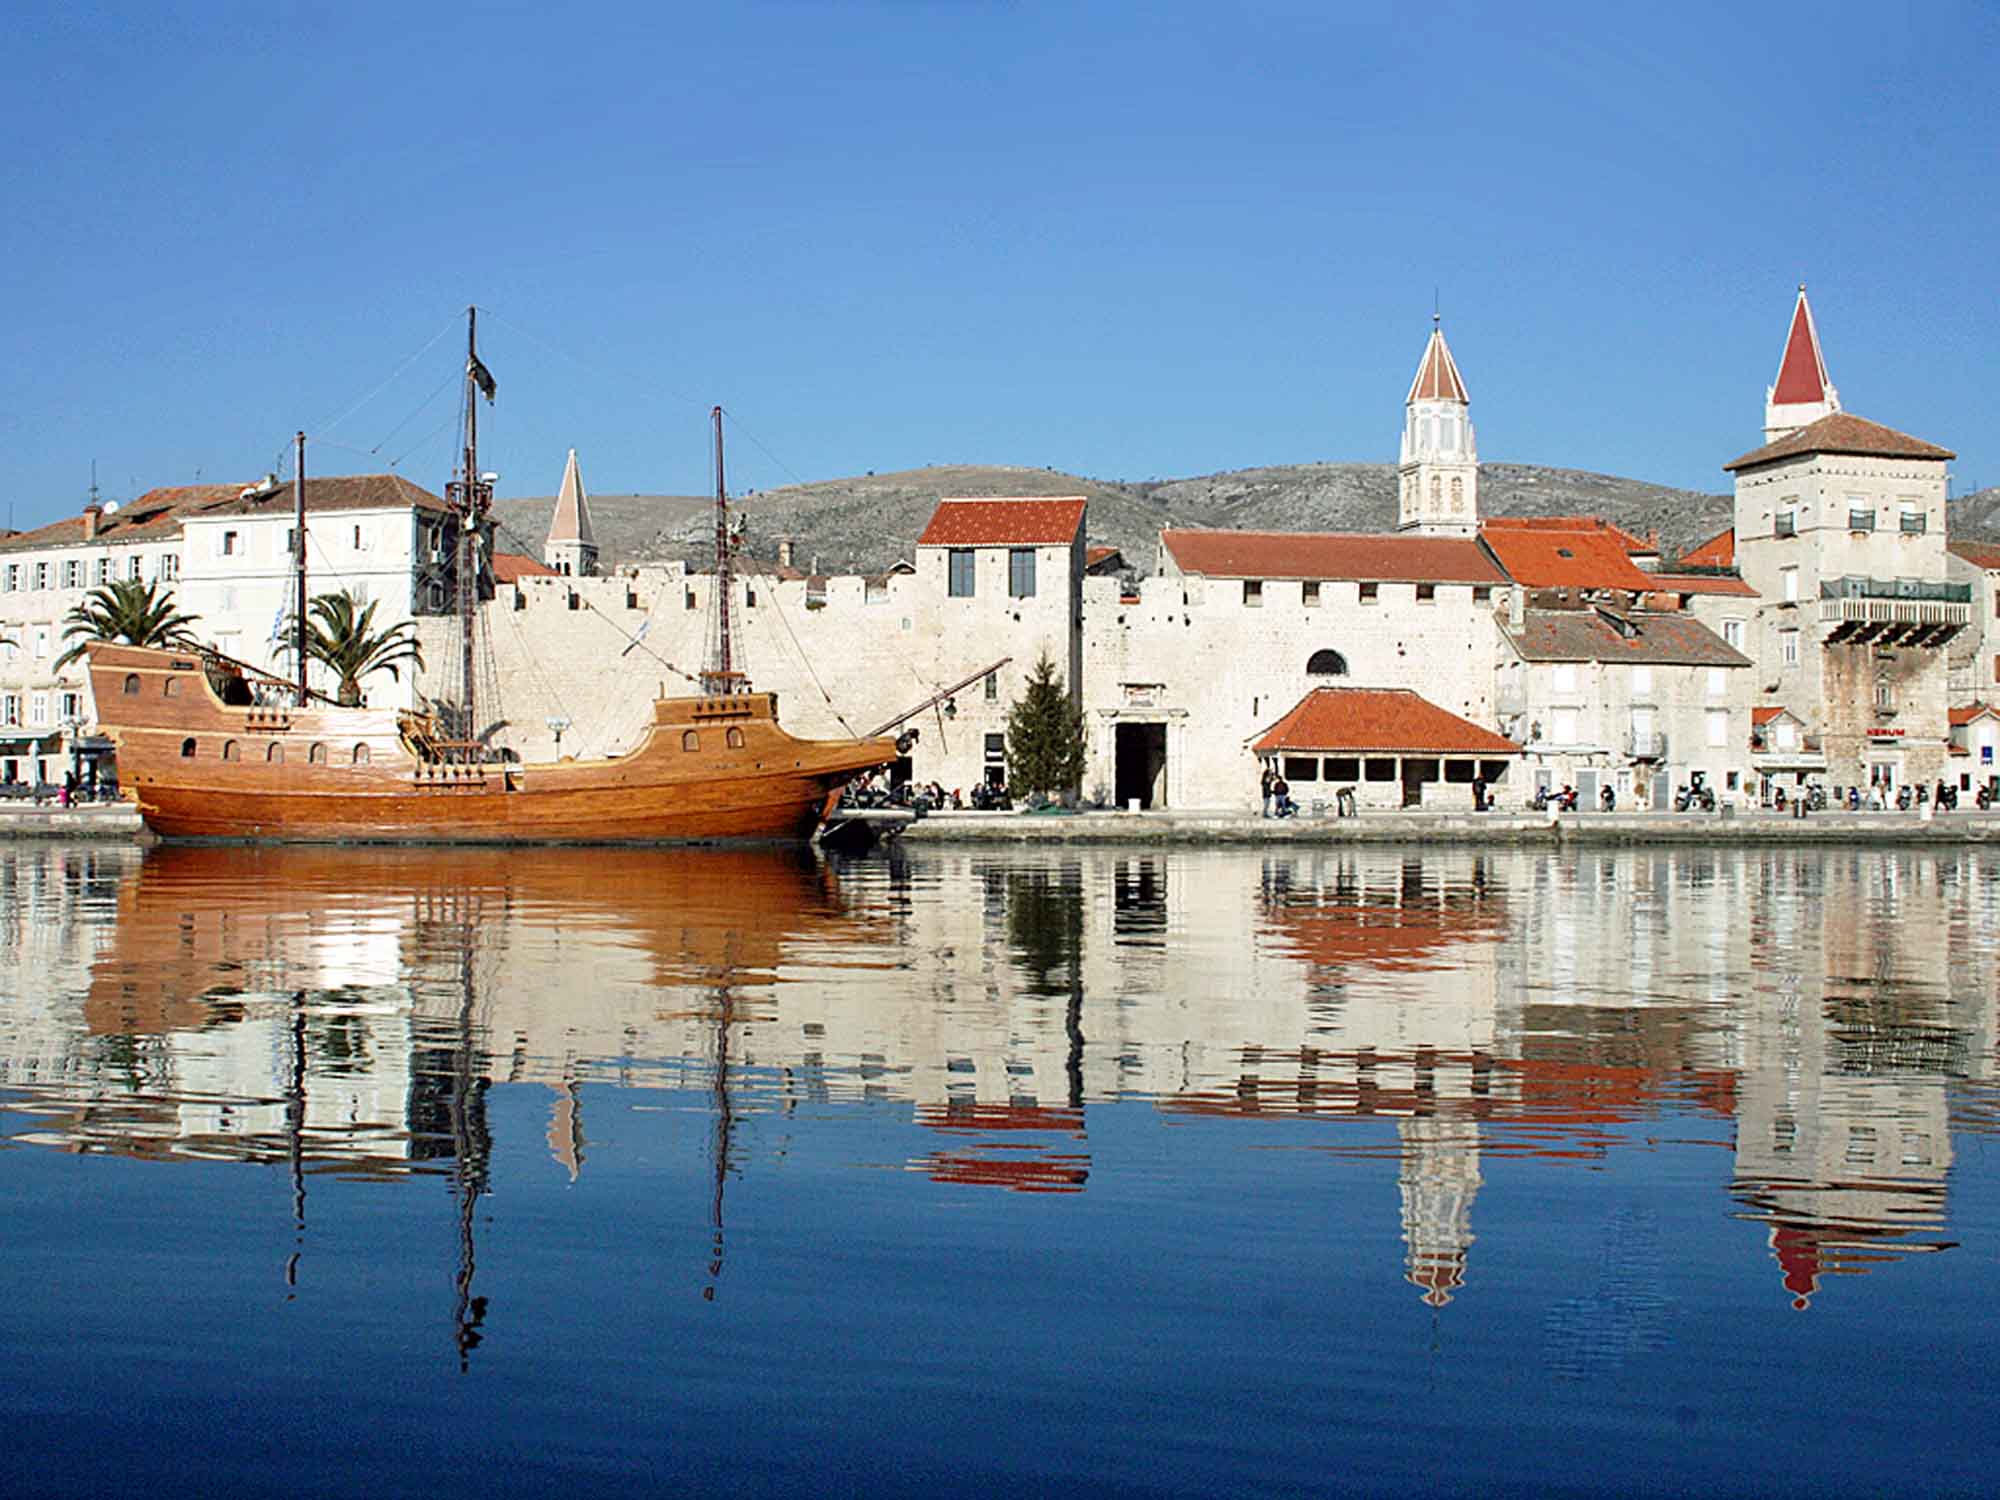 Croazia: Trogir, gioiello medievale - Gist.it